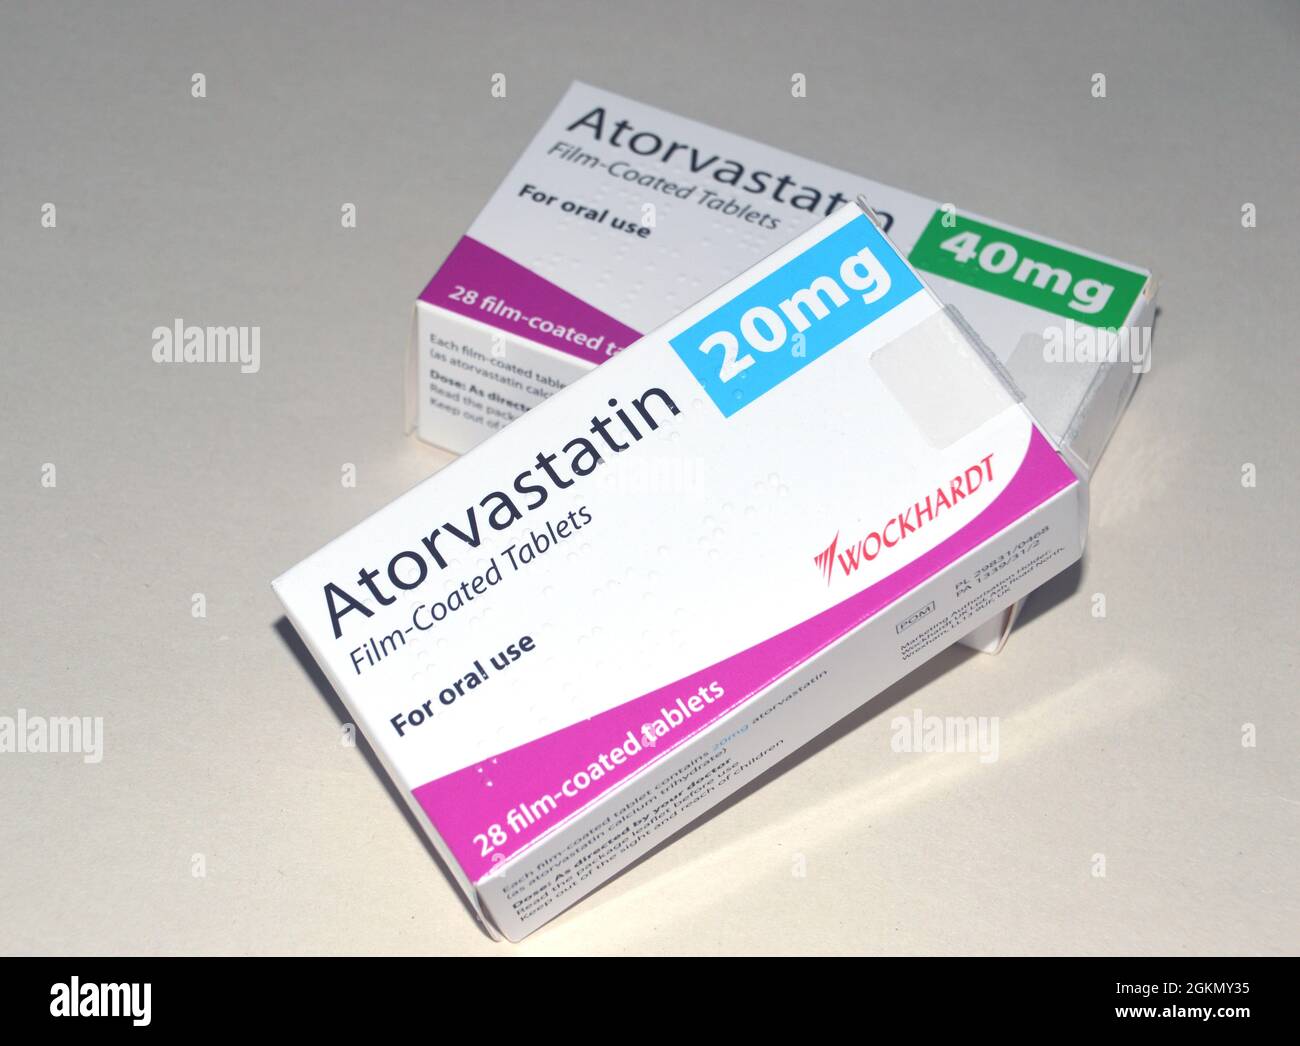 Une boîte de comprimés d'Atorvastatine pelliculés 20 mg et 40 mg (Lipitor) 'Statin' fabriqués par Wockhardt et prescrits pour réduire le cholestérol, Angleterre, Royaume-Uni. Banque D'Images